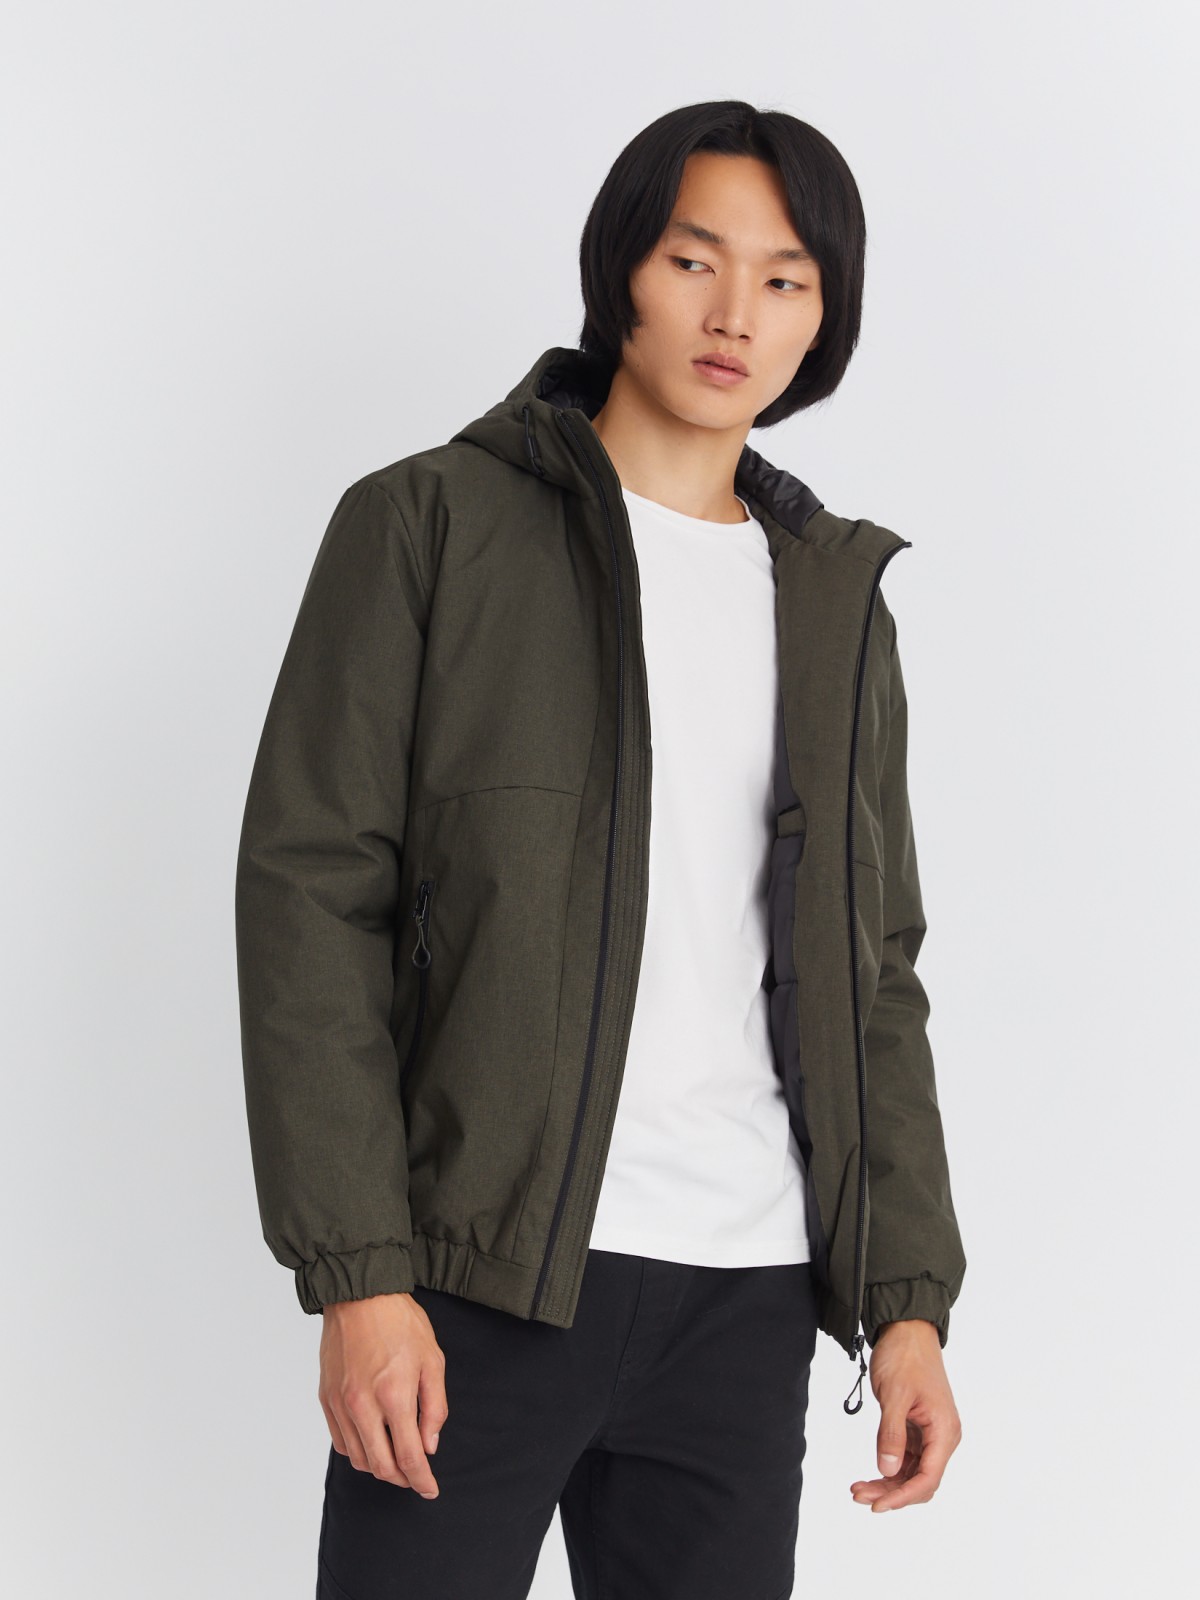 Утеплённая куртка-бомбер на синтепоне с капюшоном zolla цвета хаки